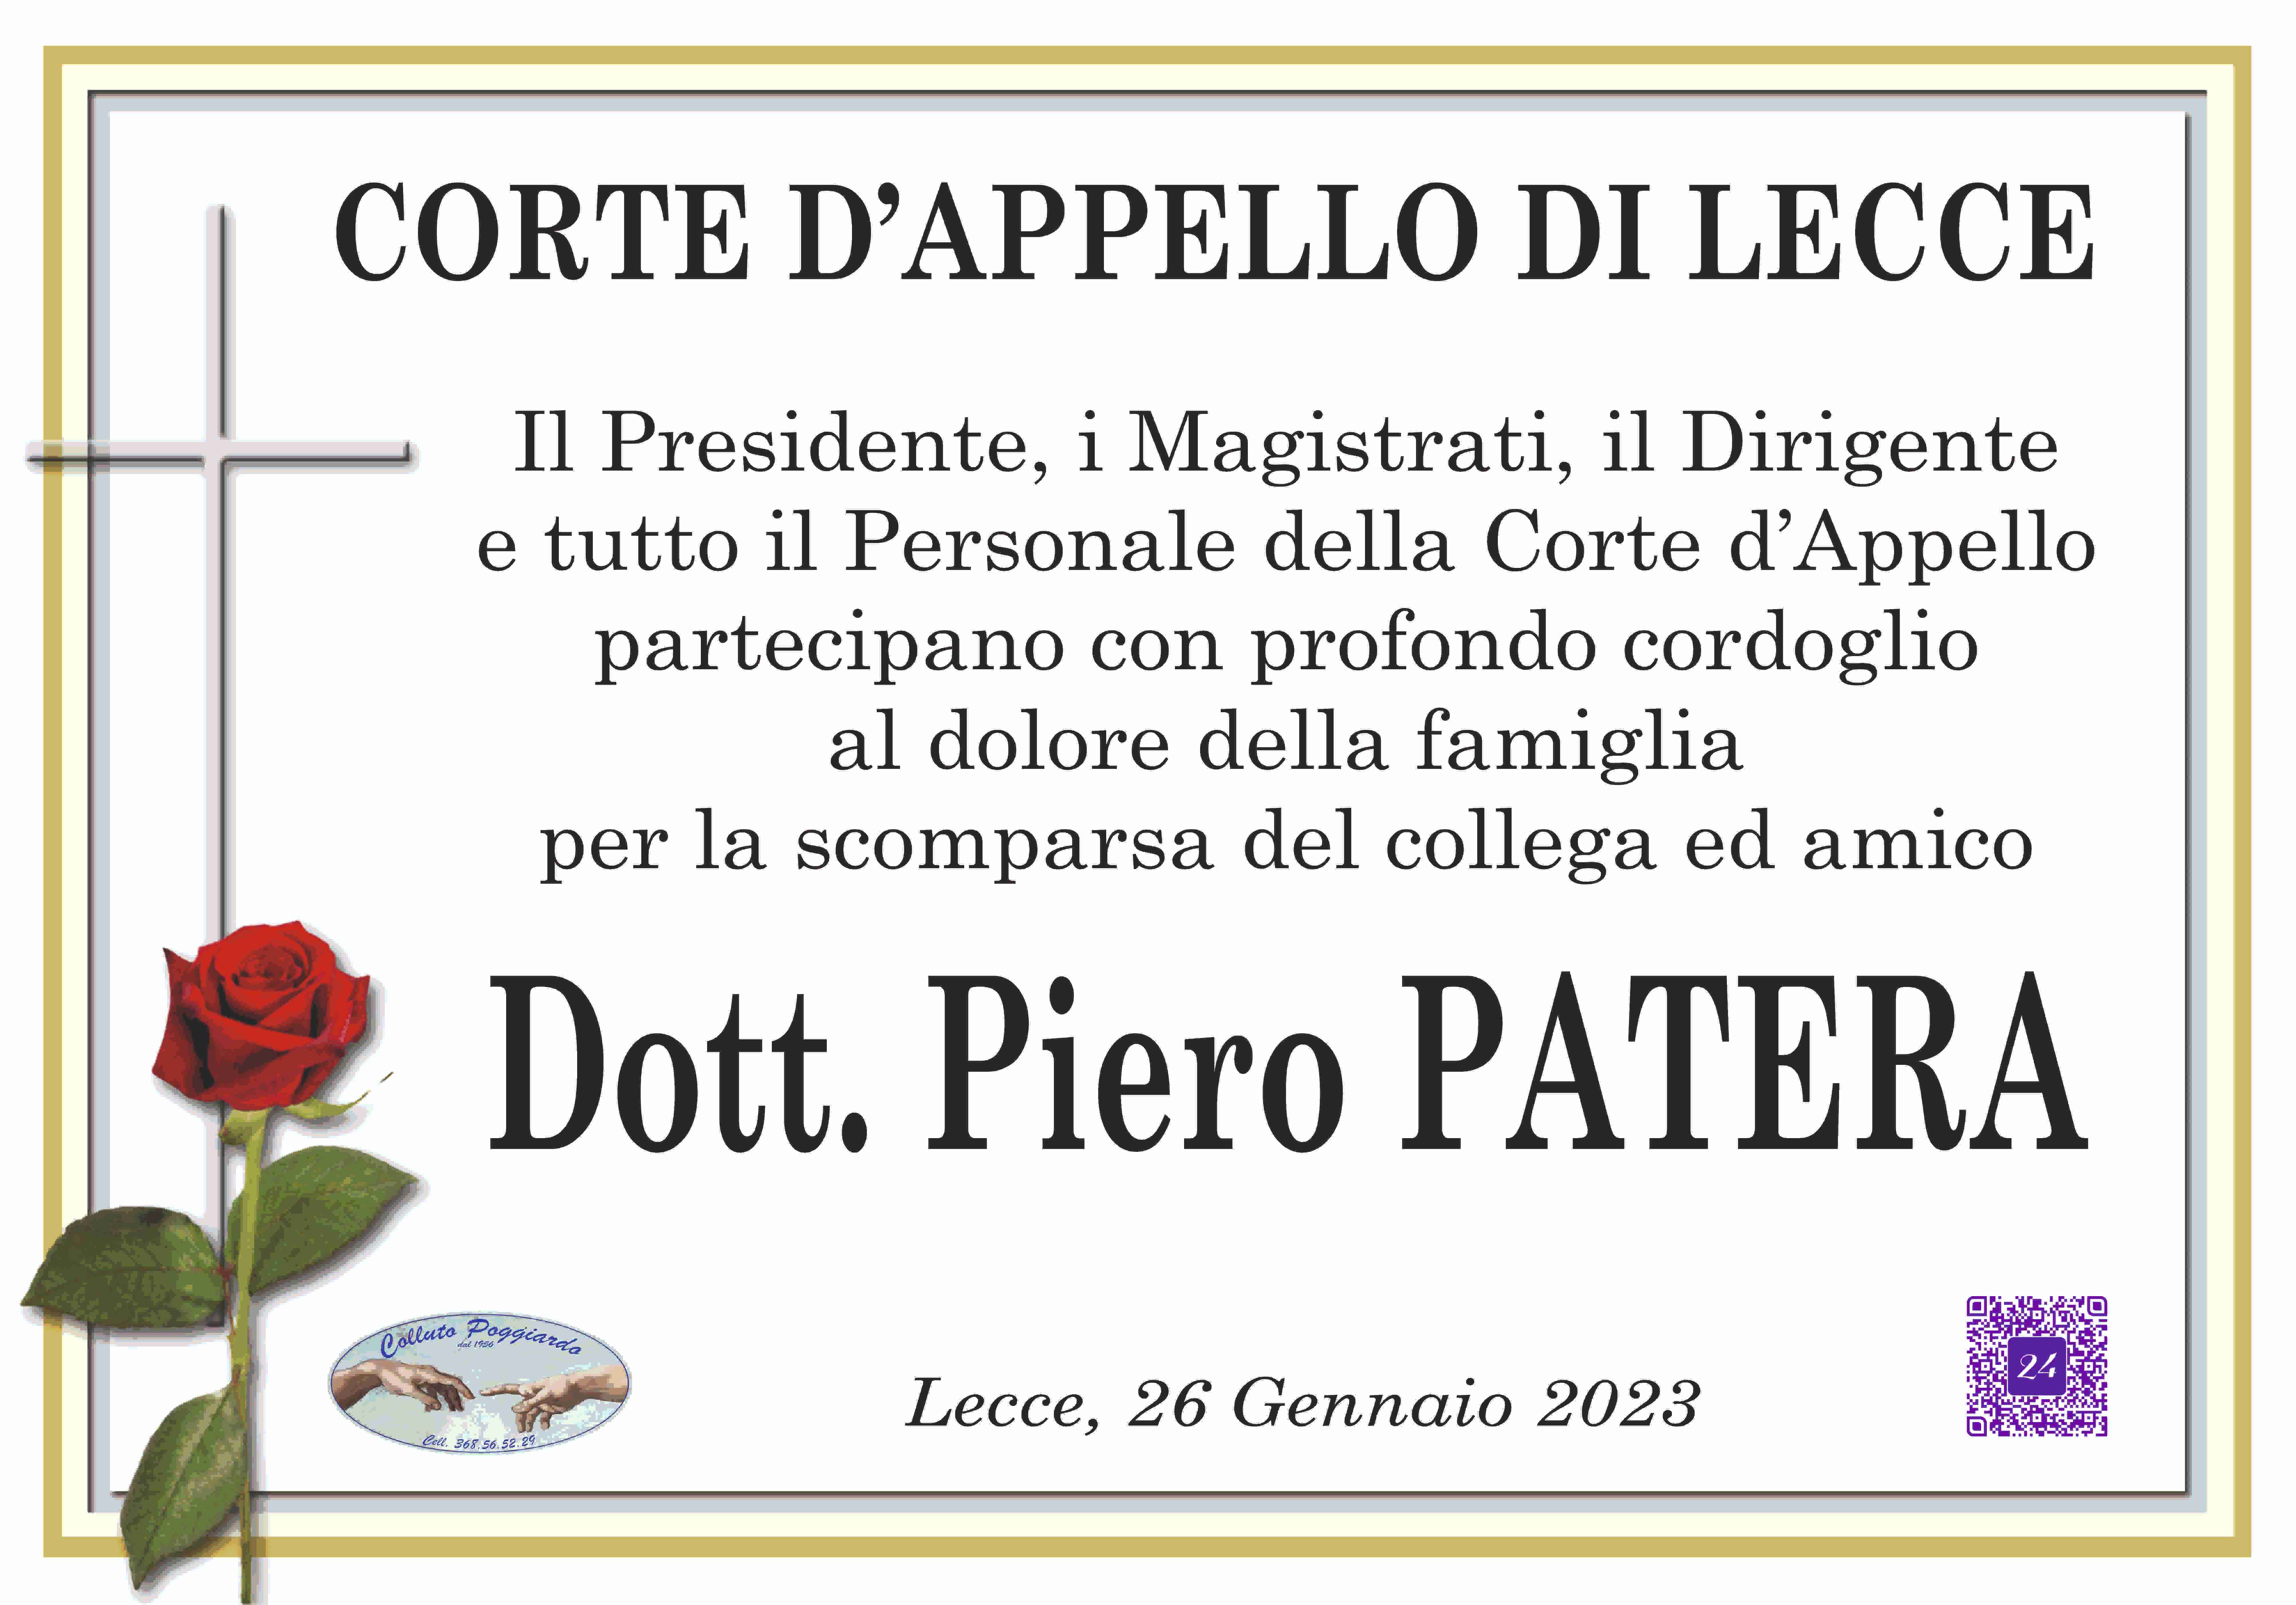 Piero Patera